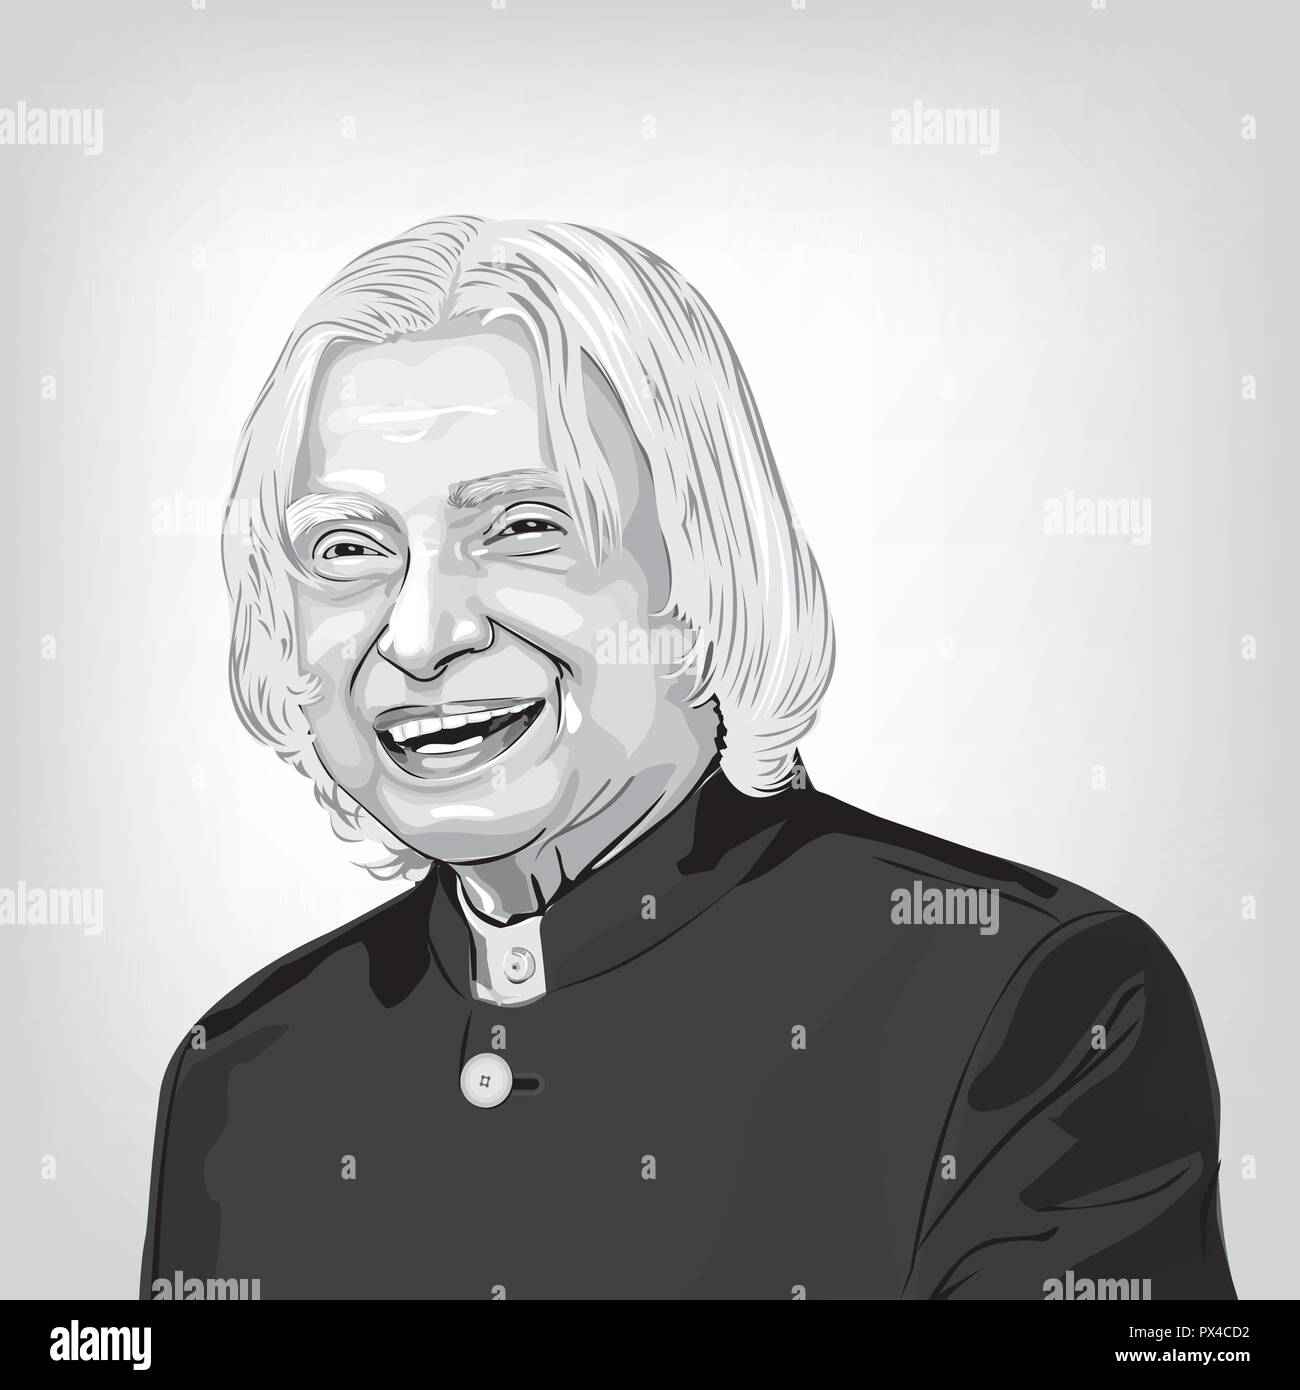 Le Dr A.P.J Abdul Kalam. l'ancien président de l'Inde et d'un scientifique de l'espace de renommée mondiale,image vectorielle d'Abdul Kalam. Illustration de Vecteur